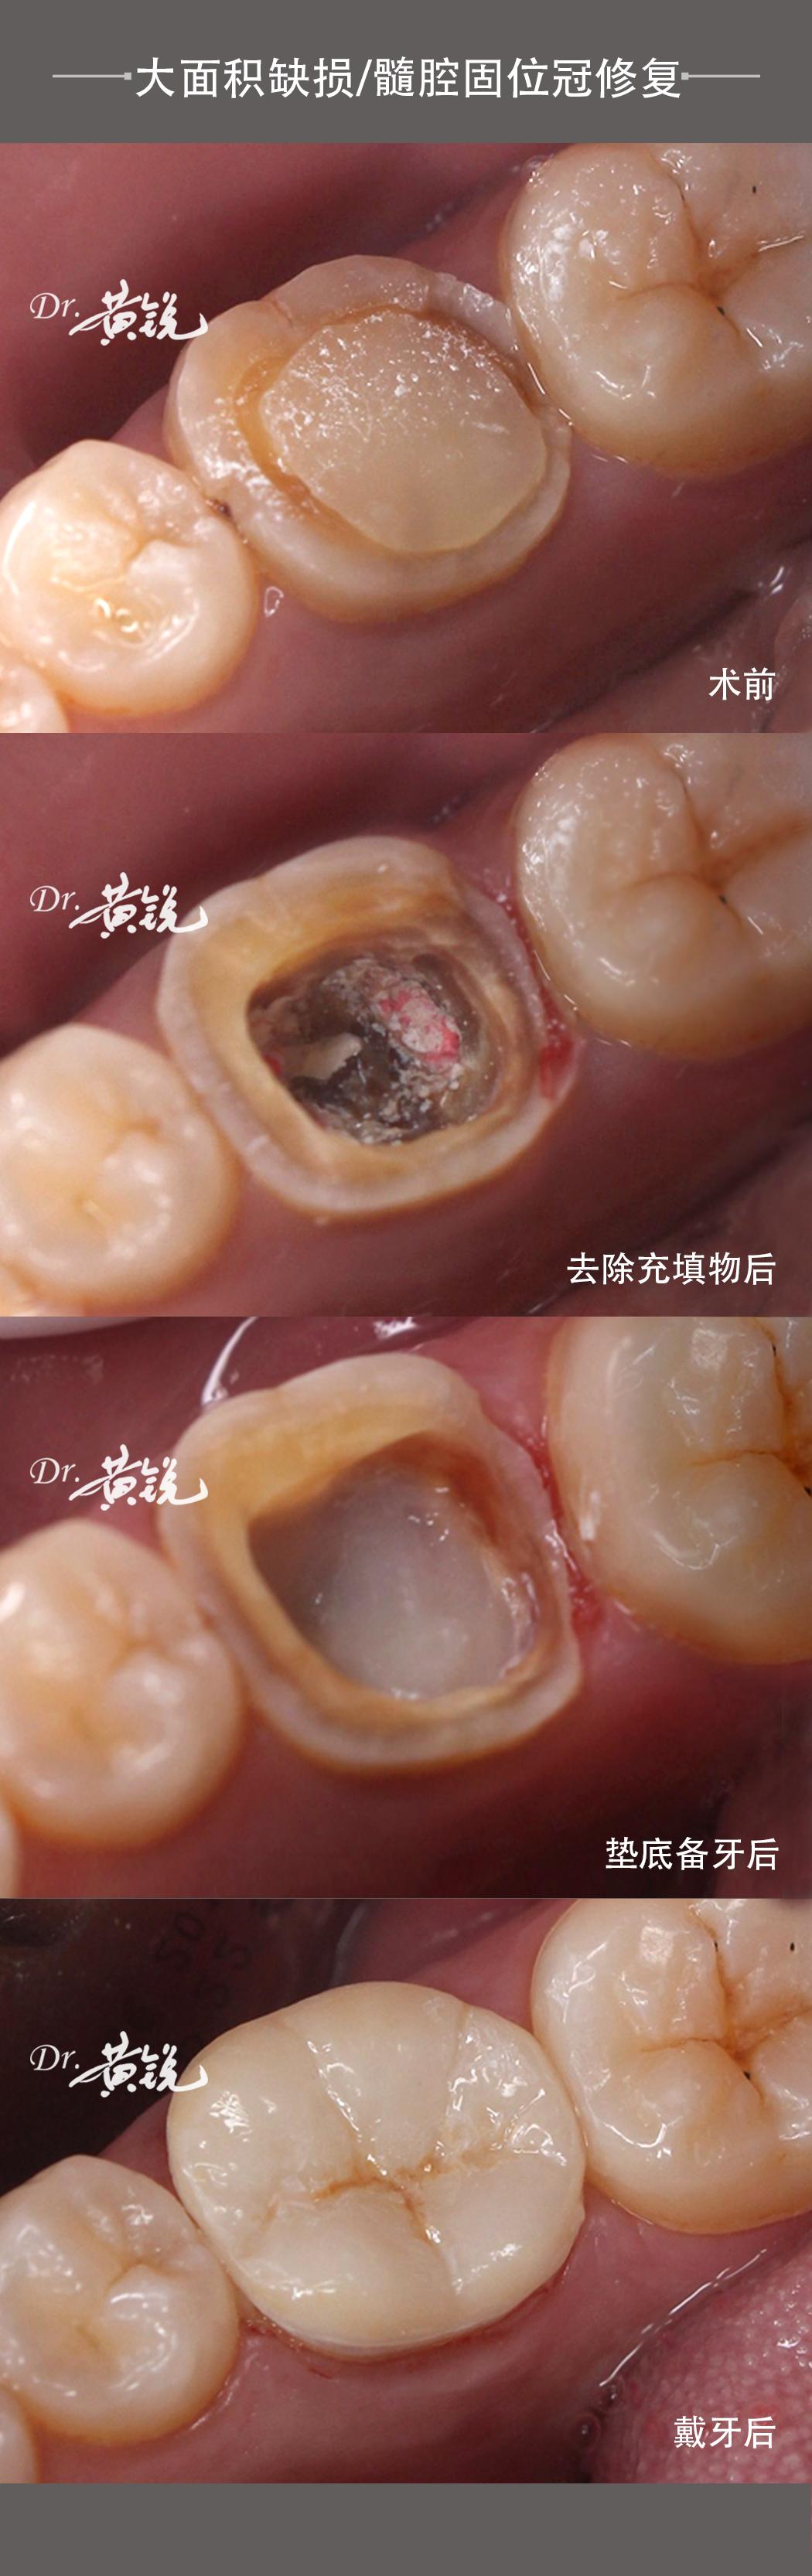 牙齿大面积缺损/髓腔固位冠修复